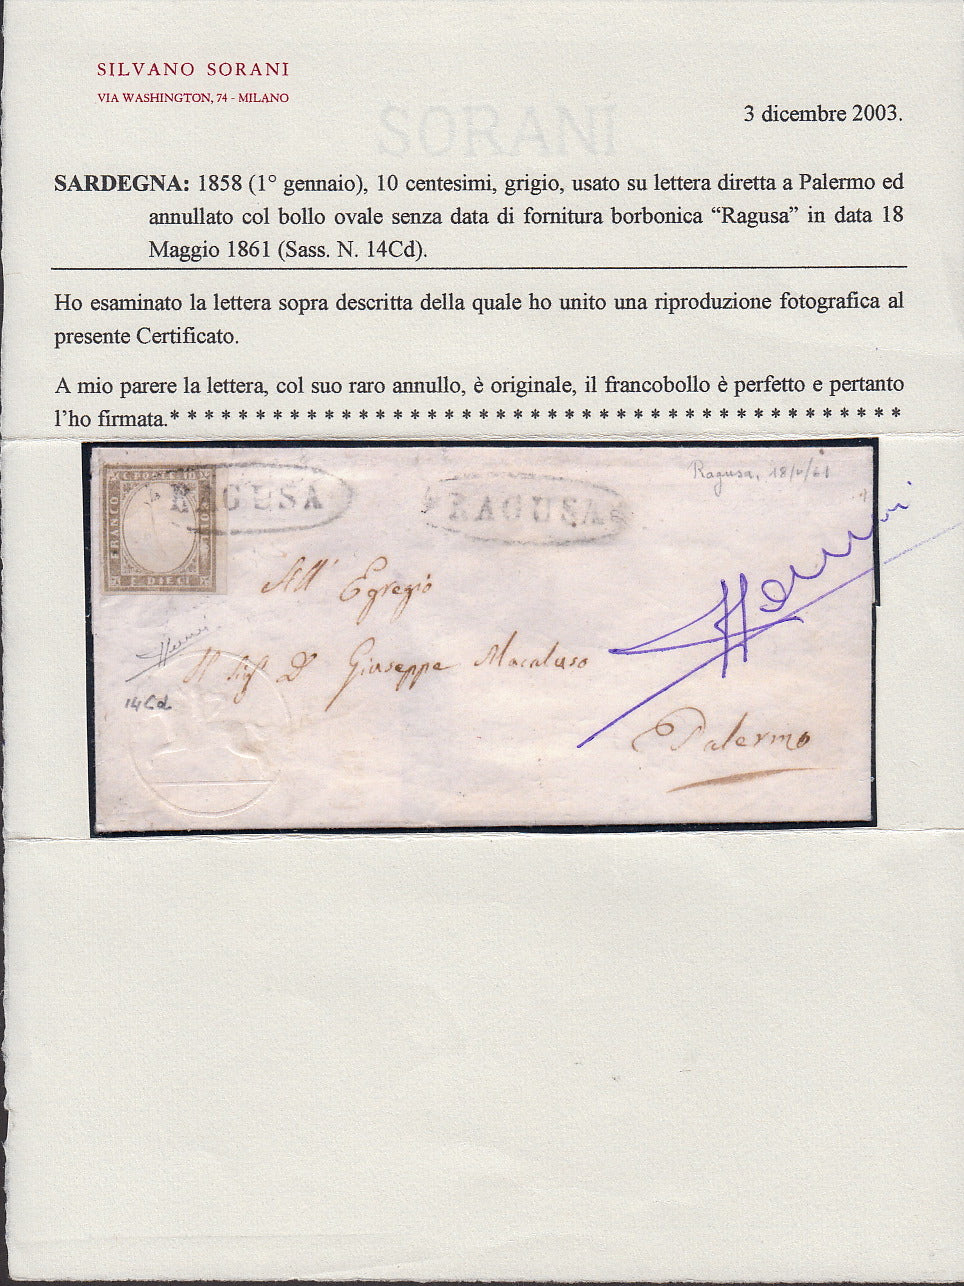 SARD132 - 1861 - Lettera spedita da Ragusa per Palermo 18/5/61 affrancata con c. 10 grigio  I tavola usato con l'ovale borbonico con i fregi (14Cd, p.ti R1)